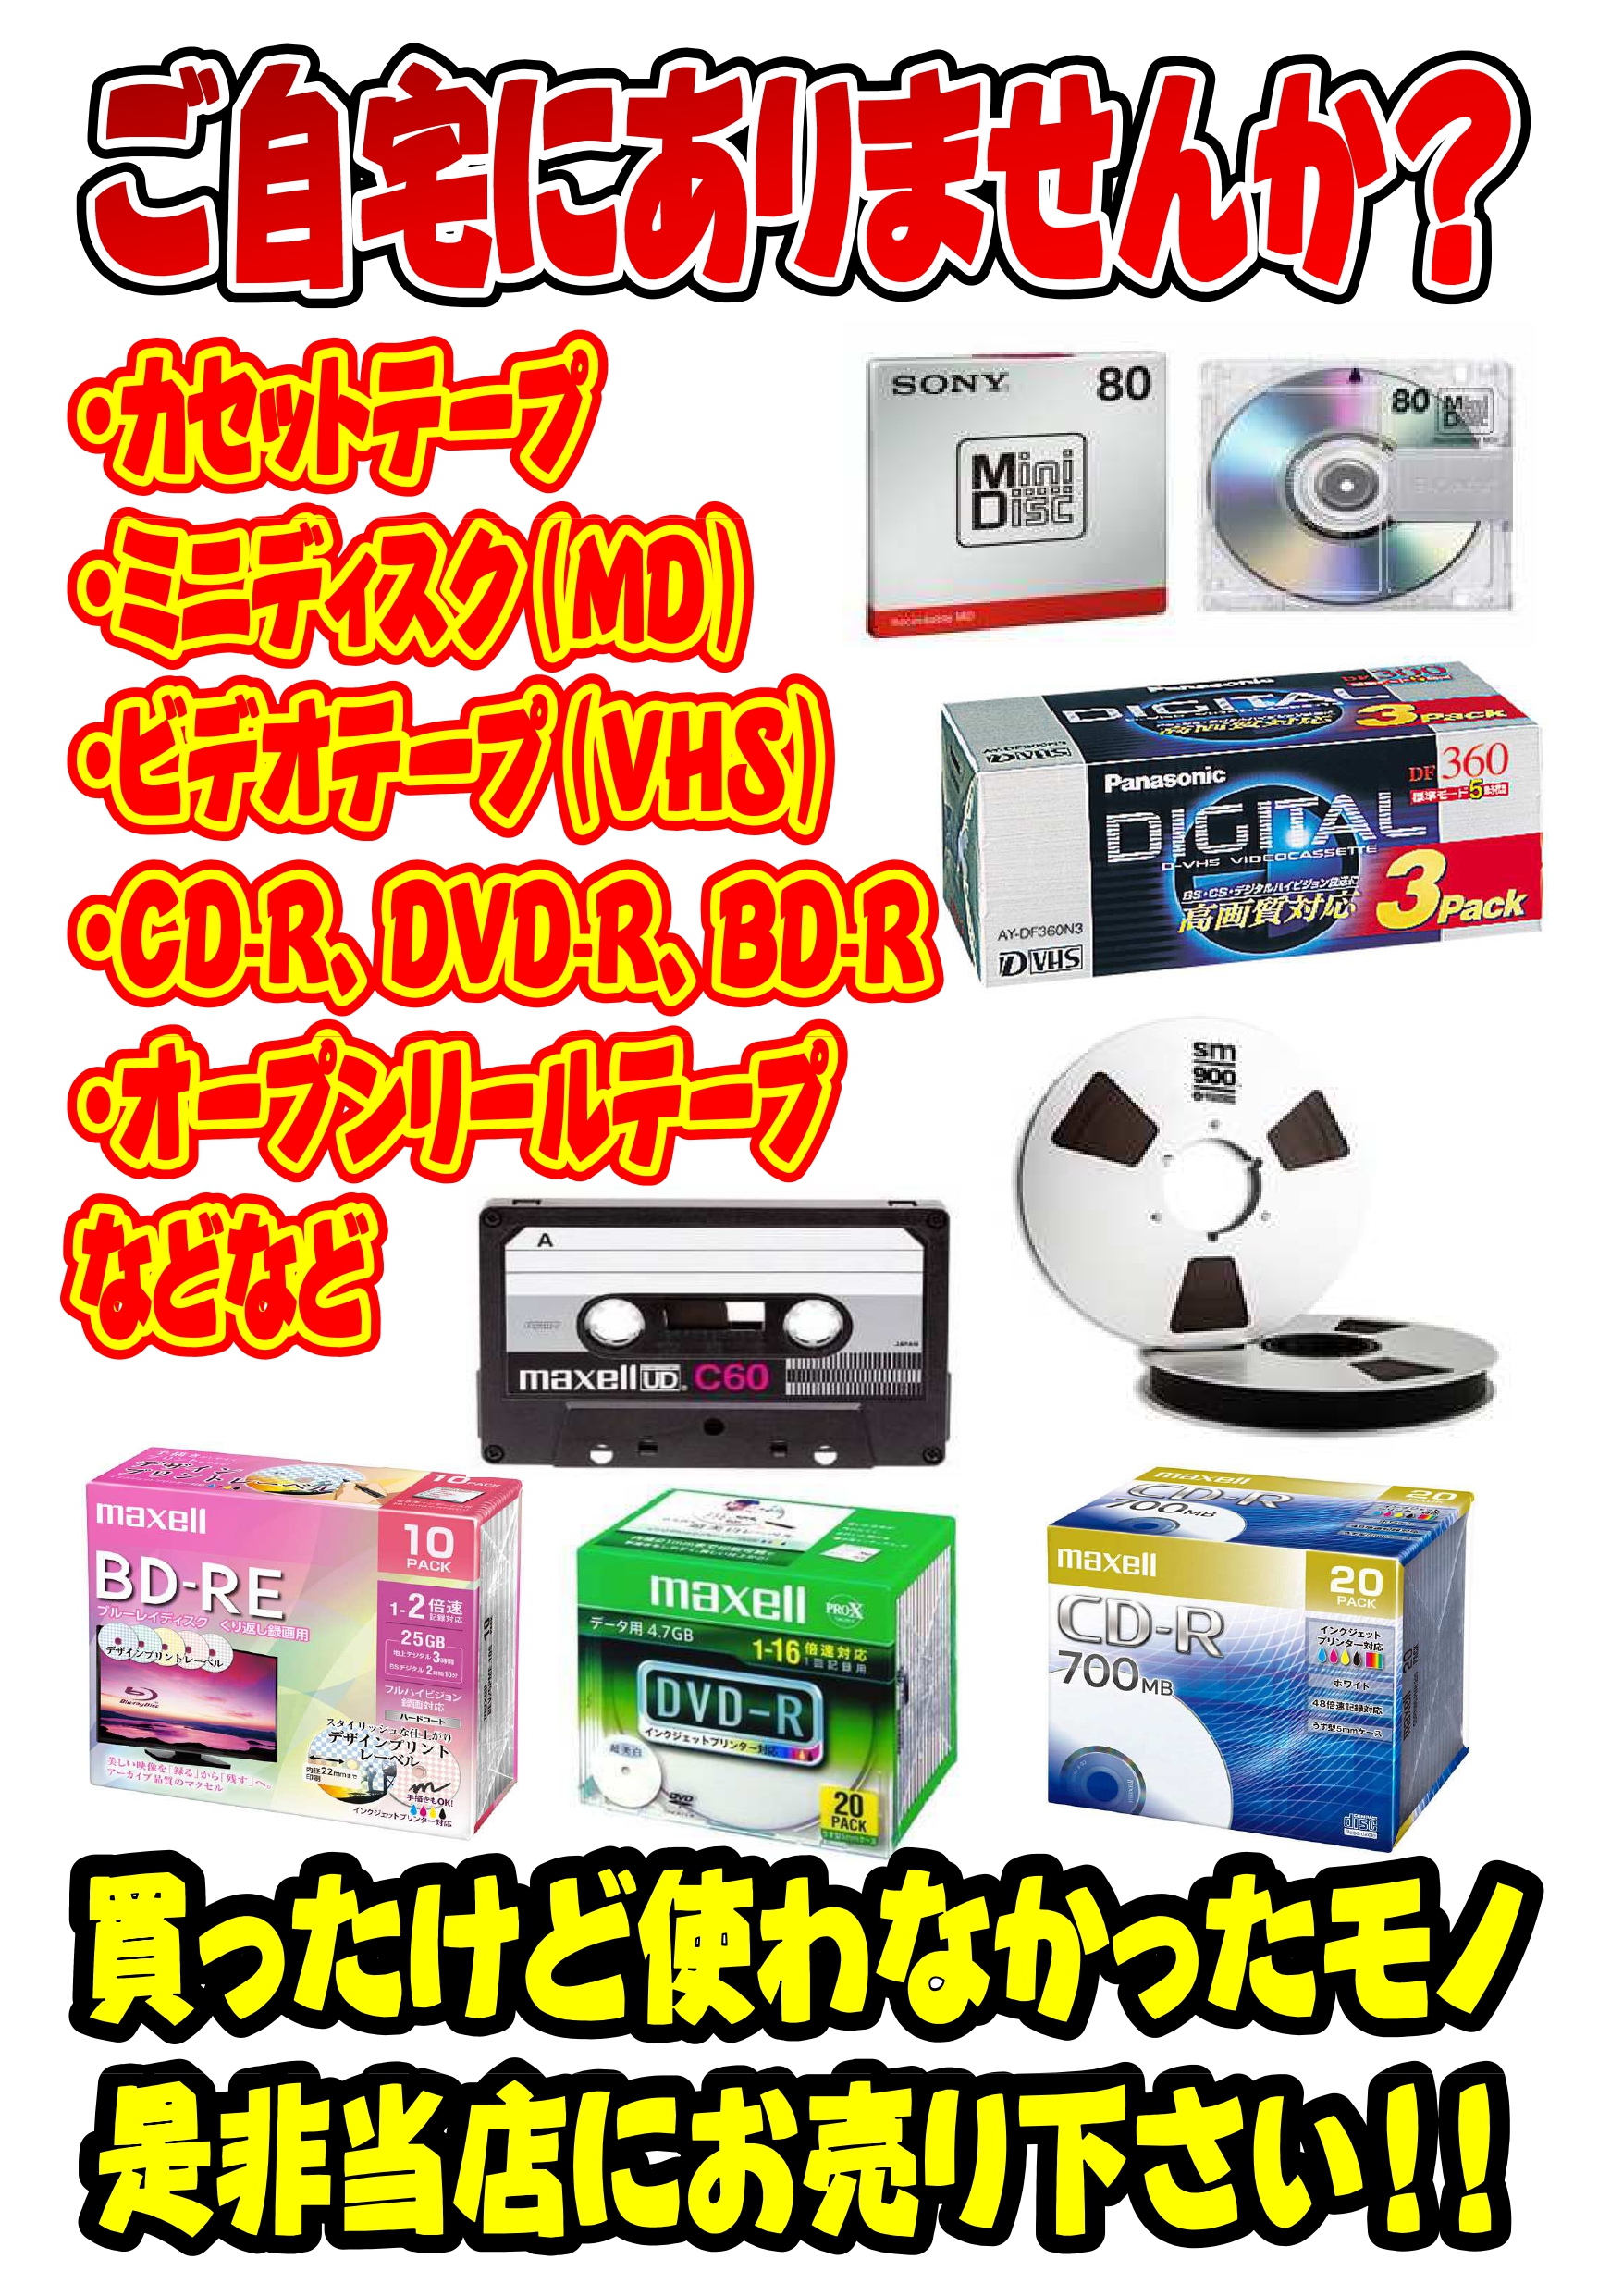 8 23 カセットテープ ビデオテープ Mdディスクなどなど買取いたします 雑貨 Dvd レコード テープ等 カセットテープ Vhs ビデオテープ オープンリール マンガ倉庫 武雄店ホームページ